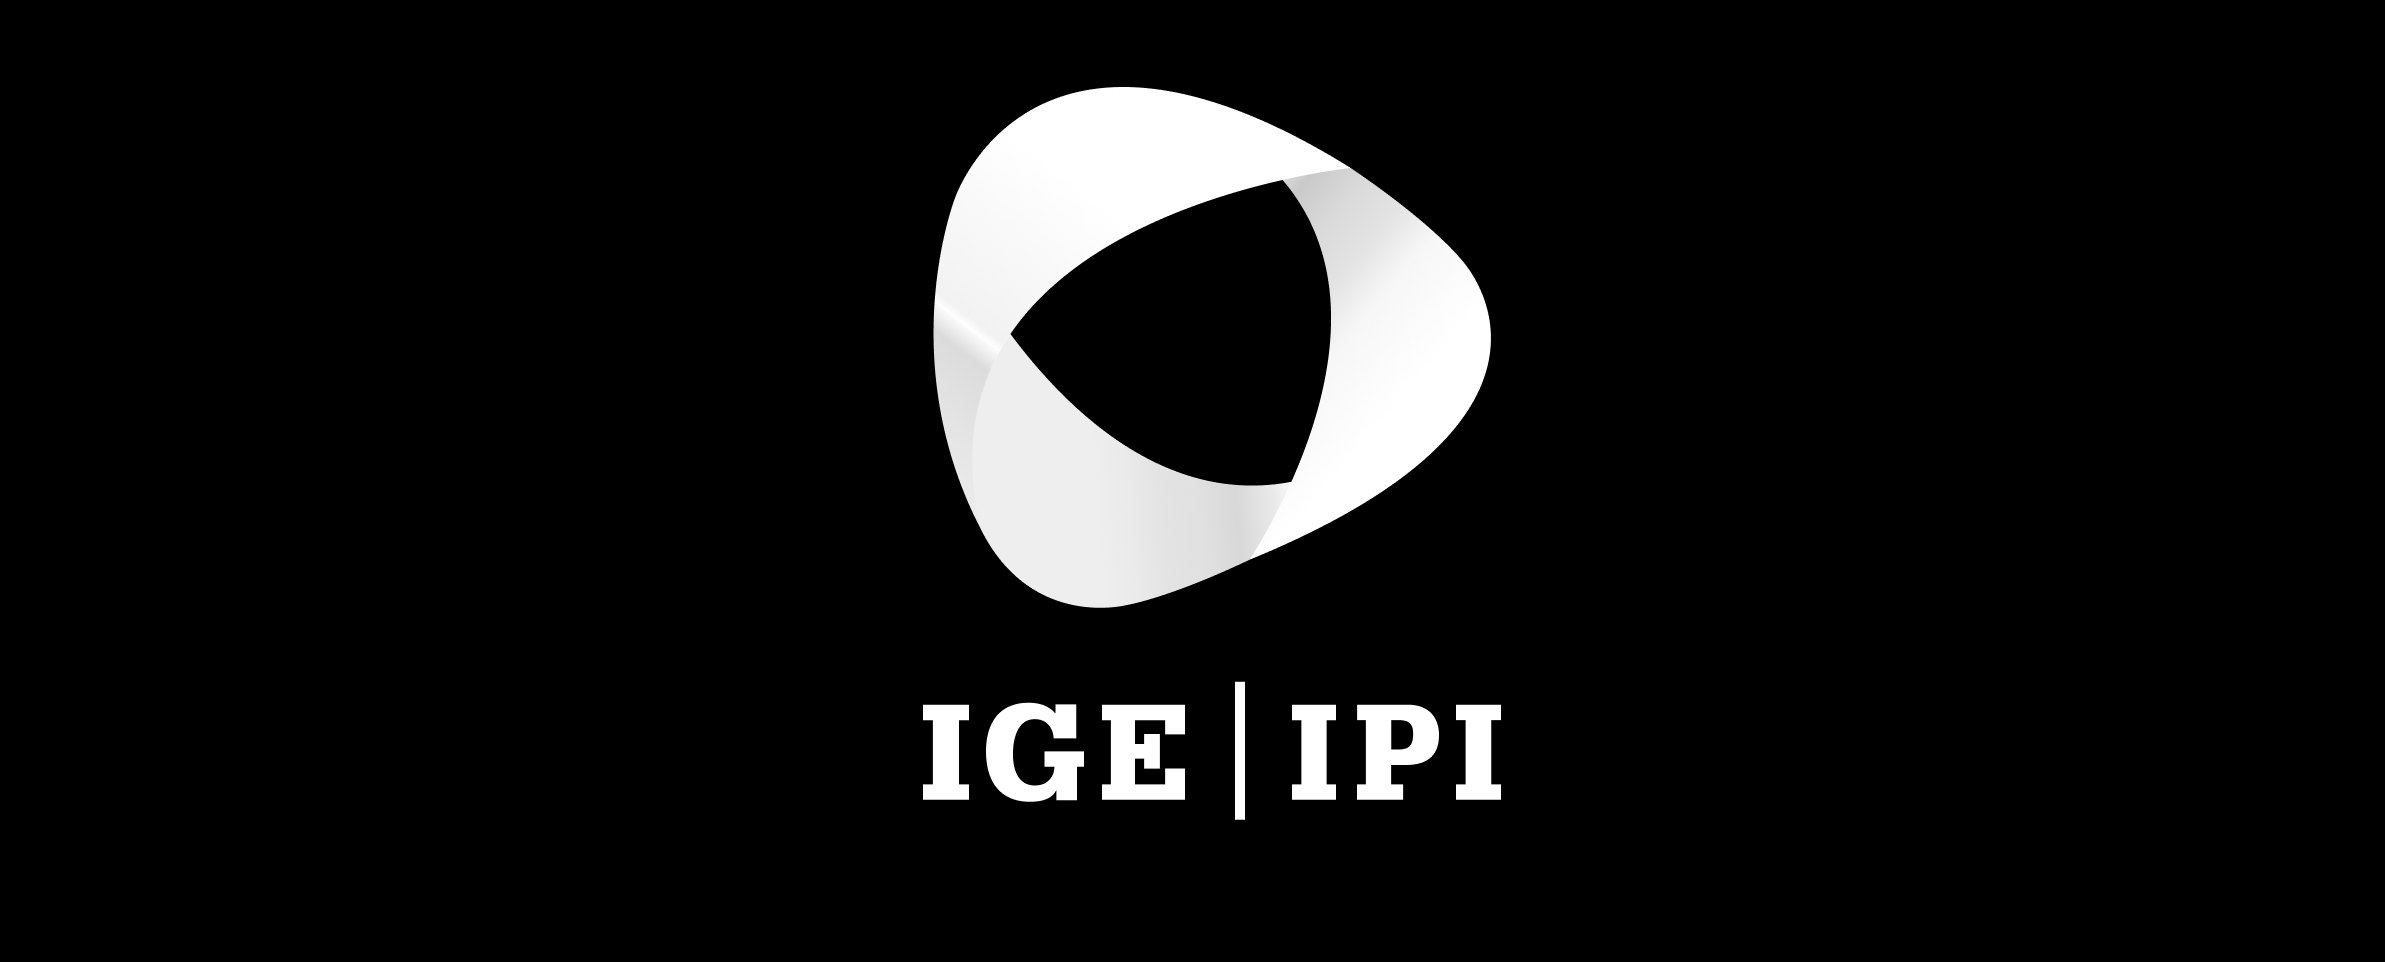 EventP IPI IGE